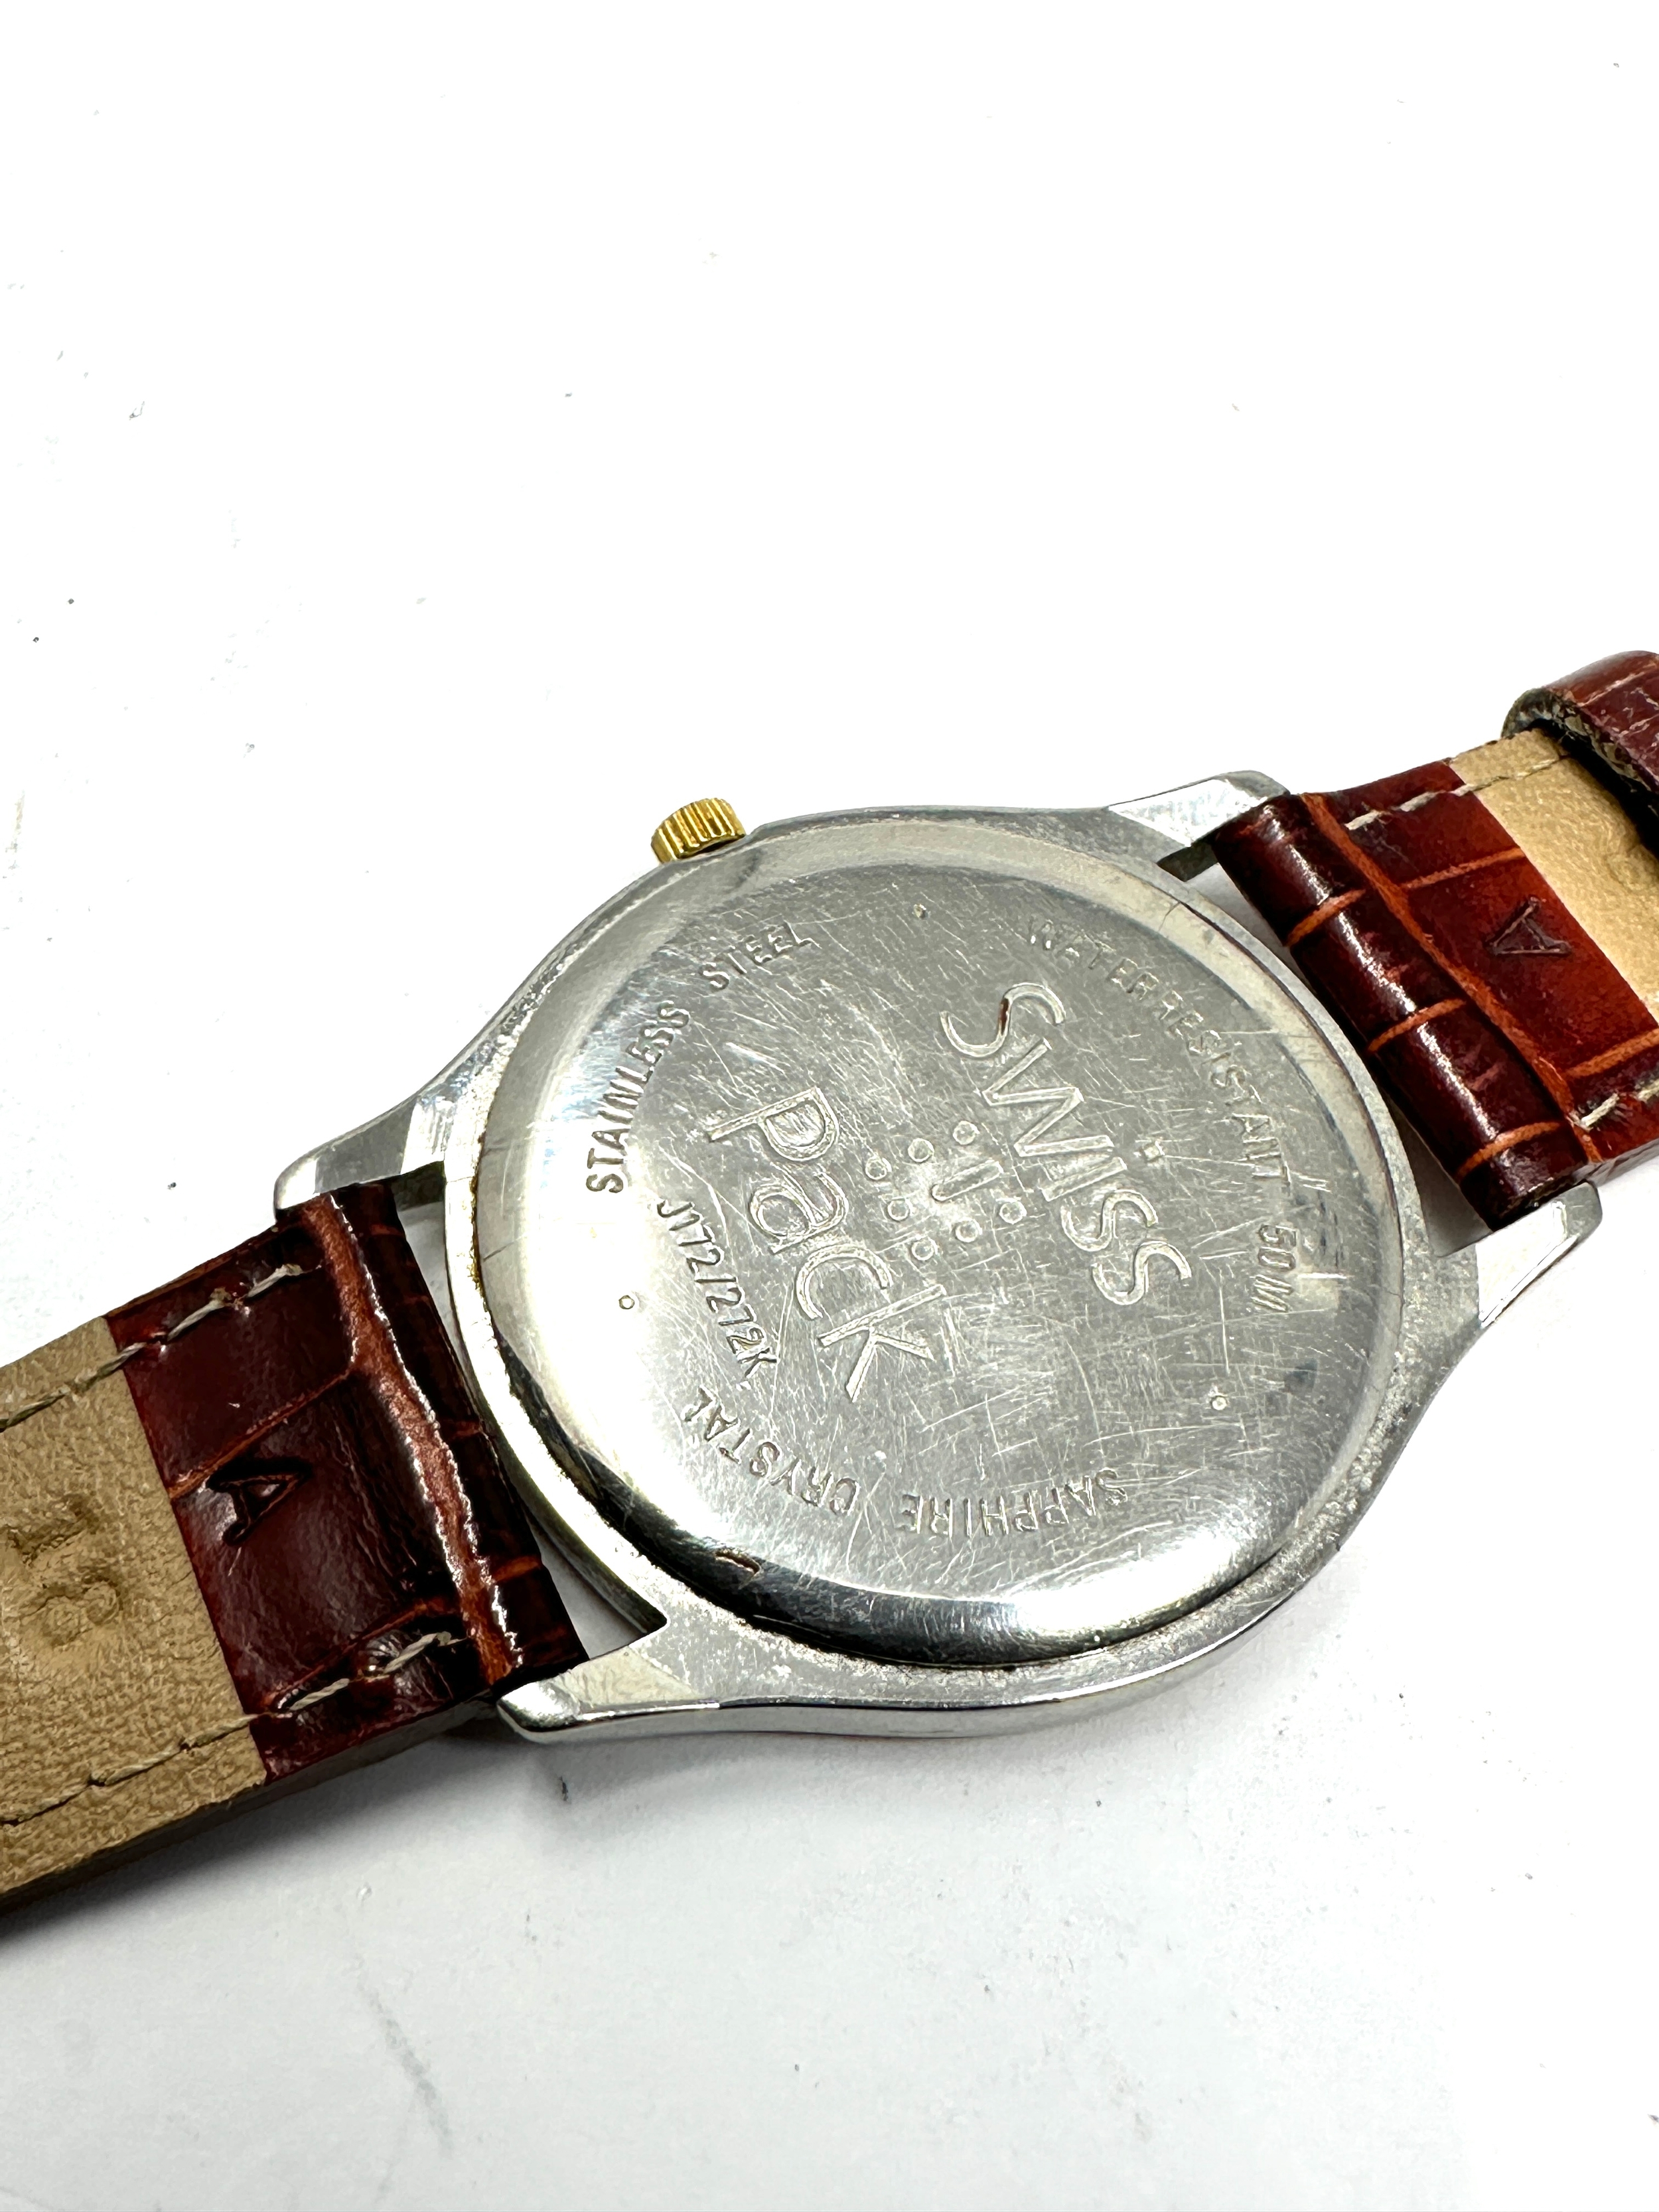 Gents quartz tissot pr 50 wristwatch the watch is ticking - Bild 3 aus 4